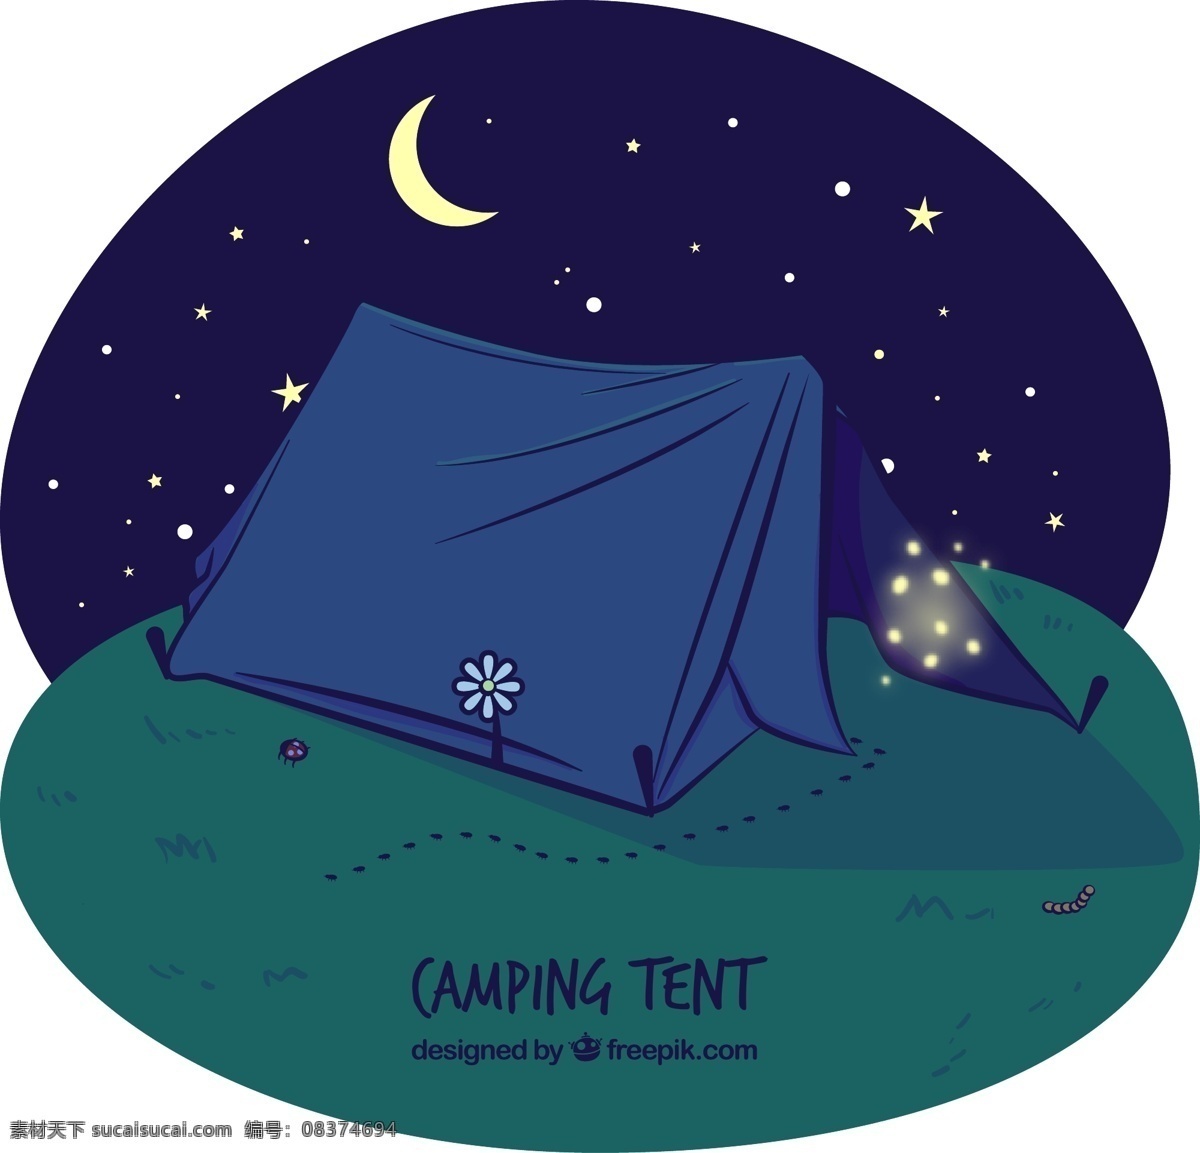 夜晚 郊外 野营 帐篷 插画 矢量 花 月亮 星星 动漫动画 风景漫画